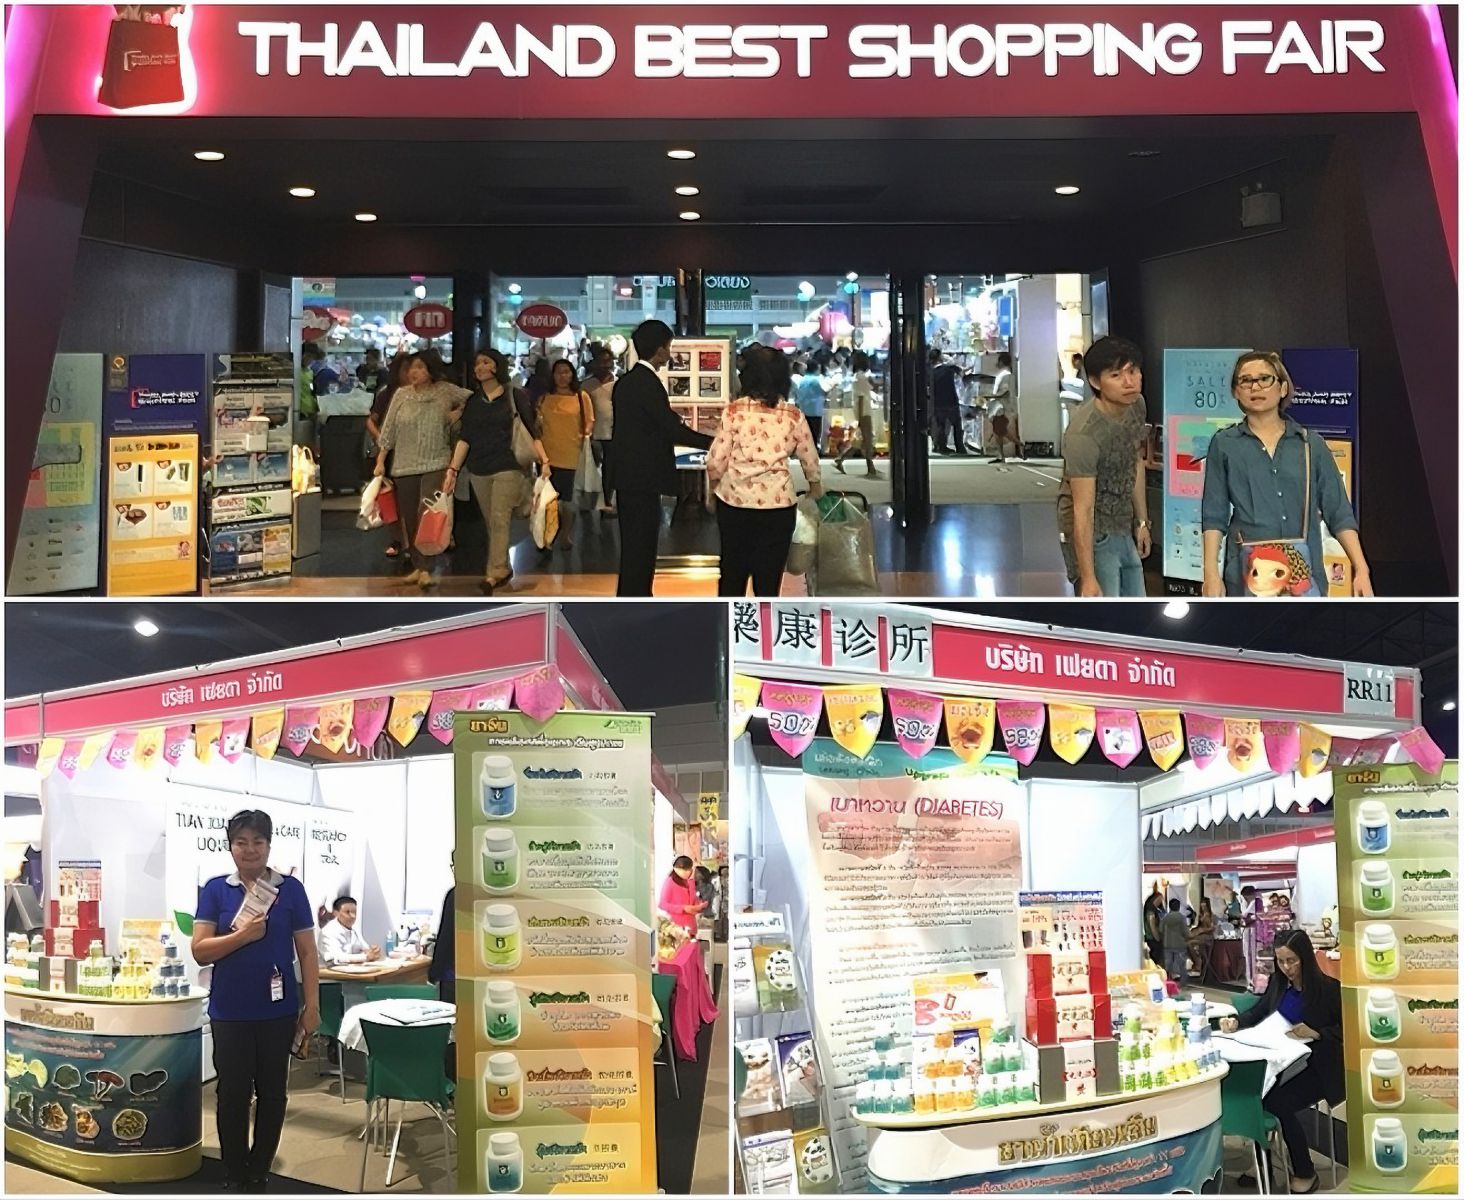 Thailand Best Shopping Fair 2015